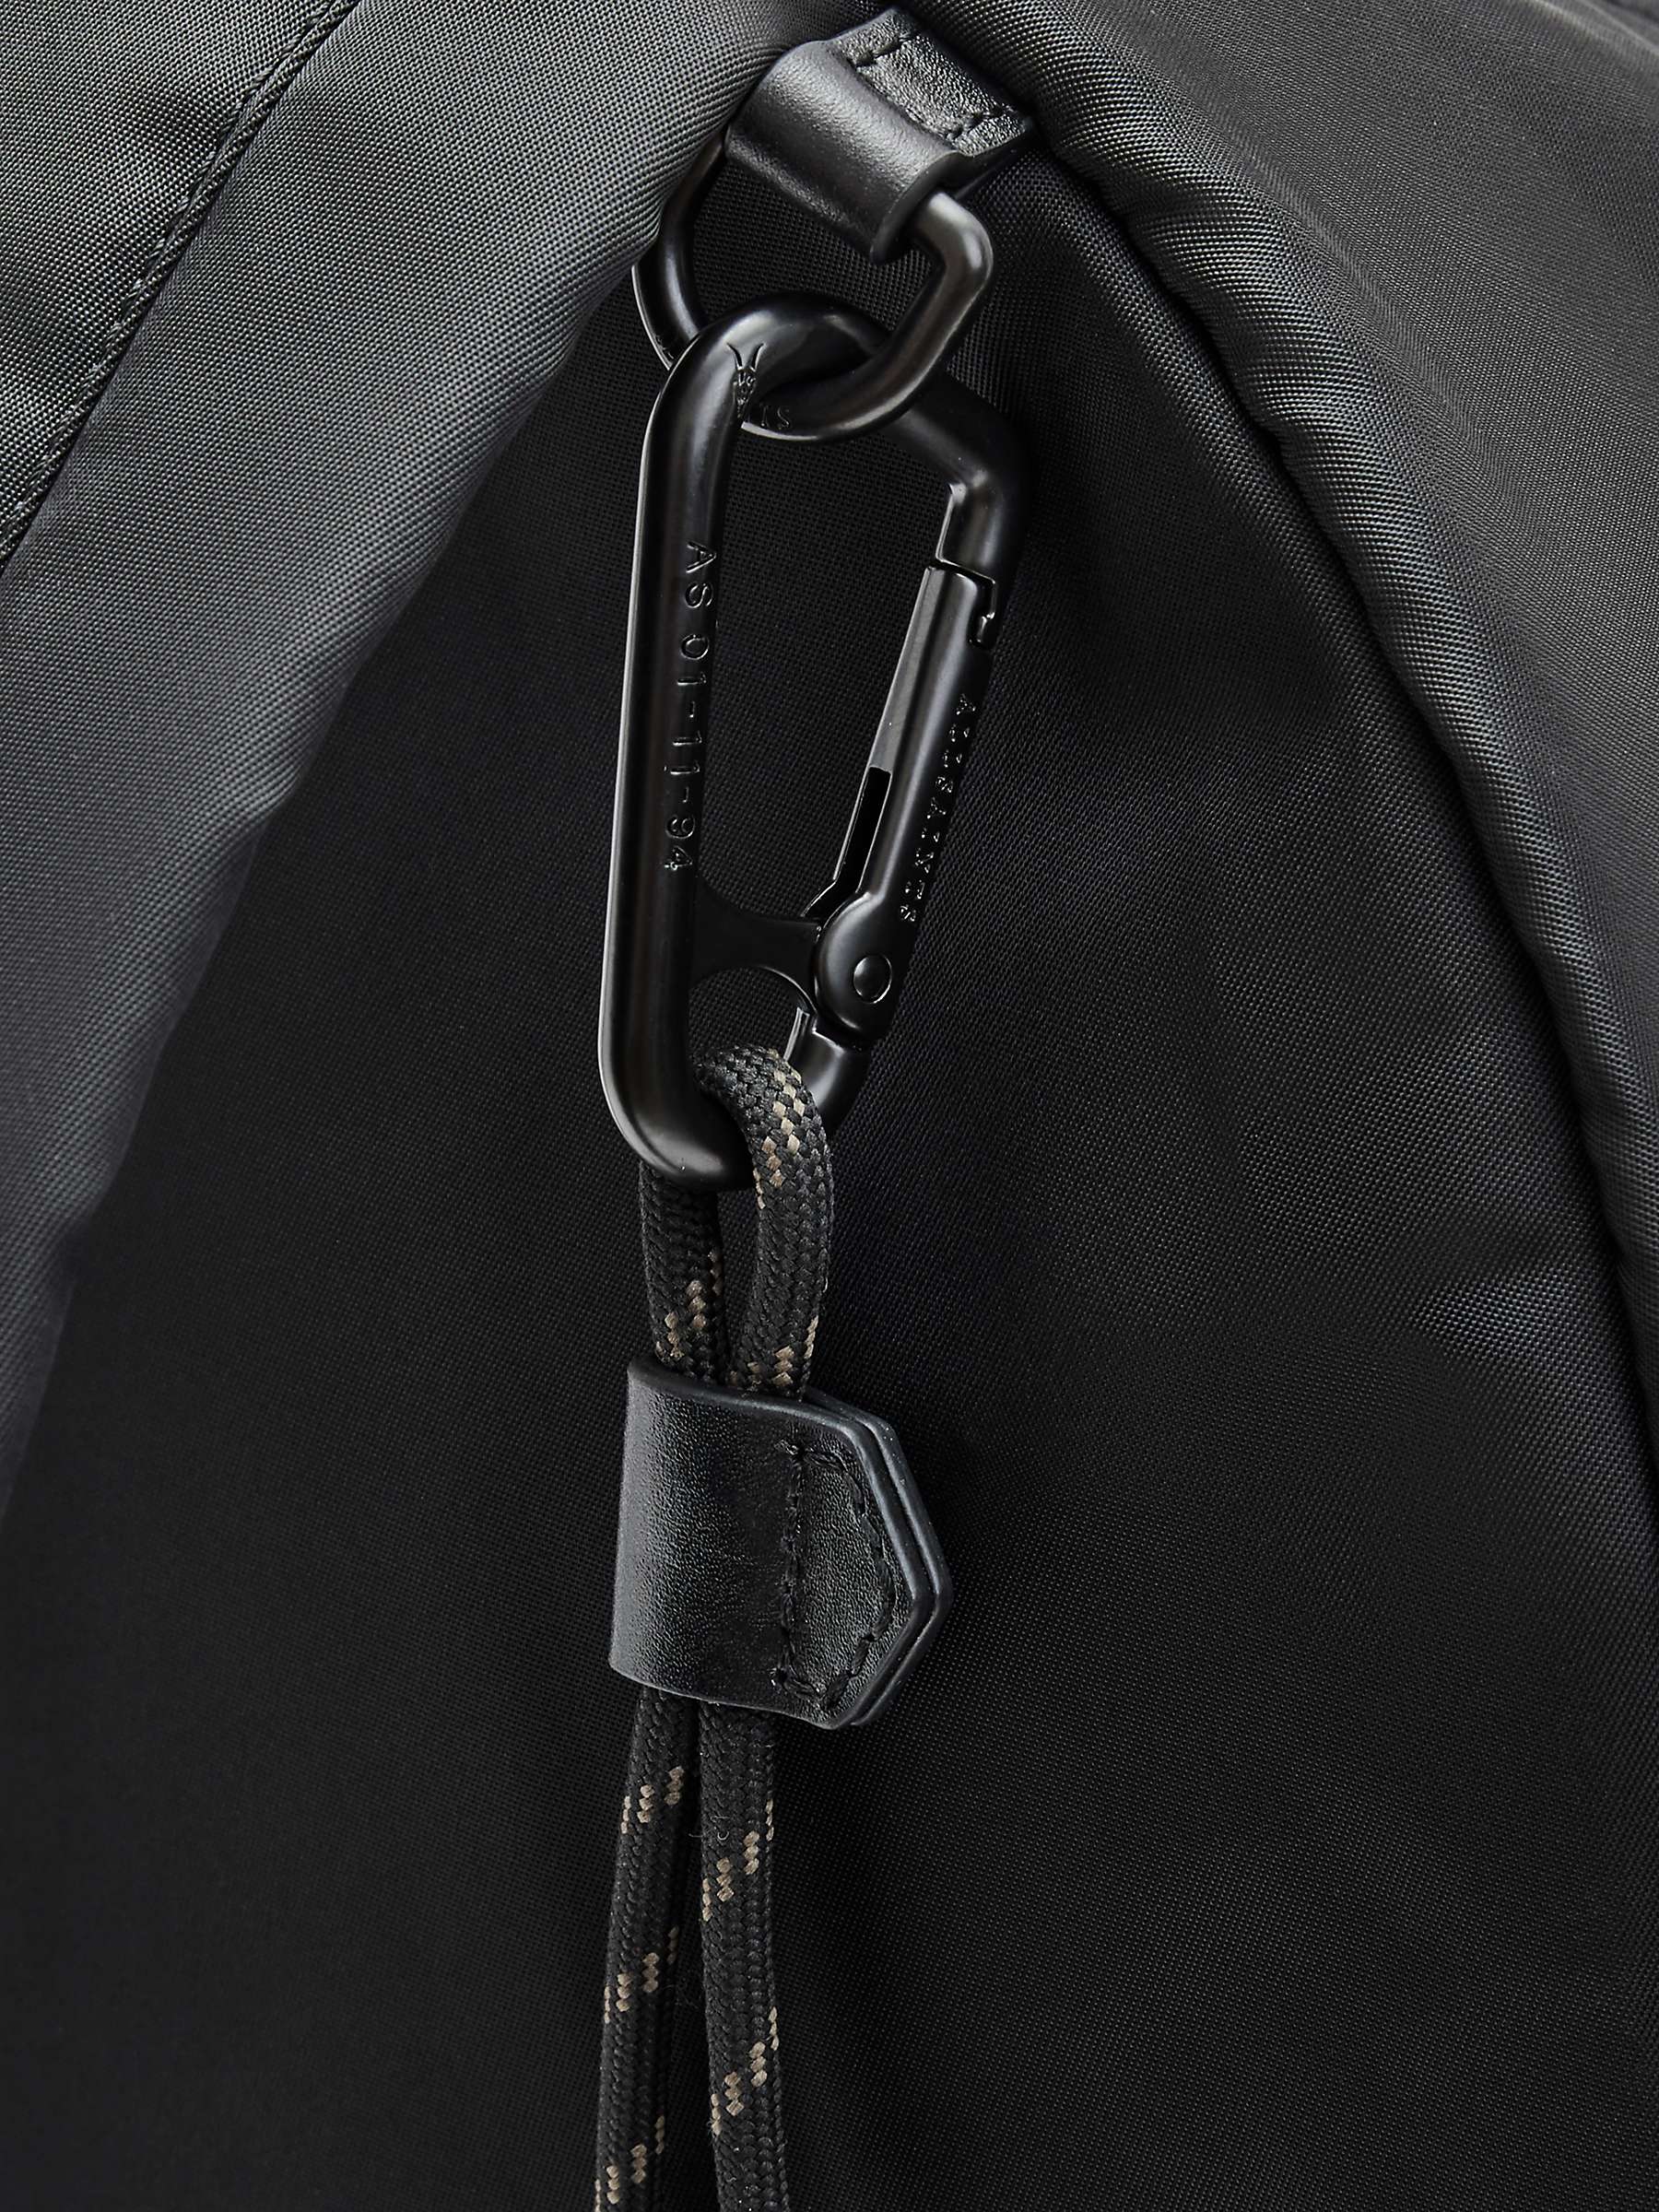 Buy AllSaints Carabiner Backpack, Black Online at johnlewis.com